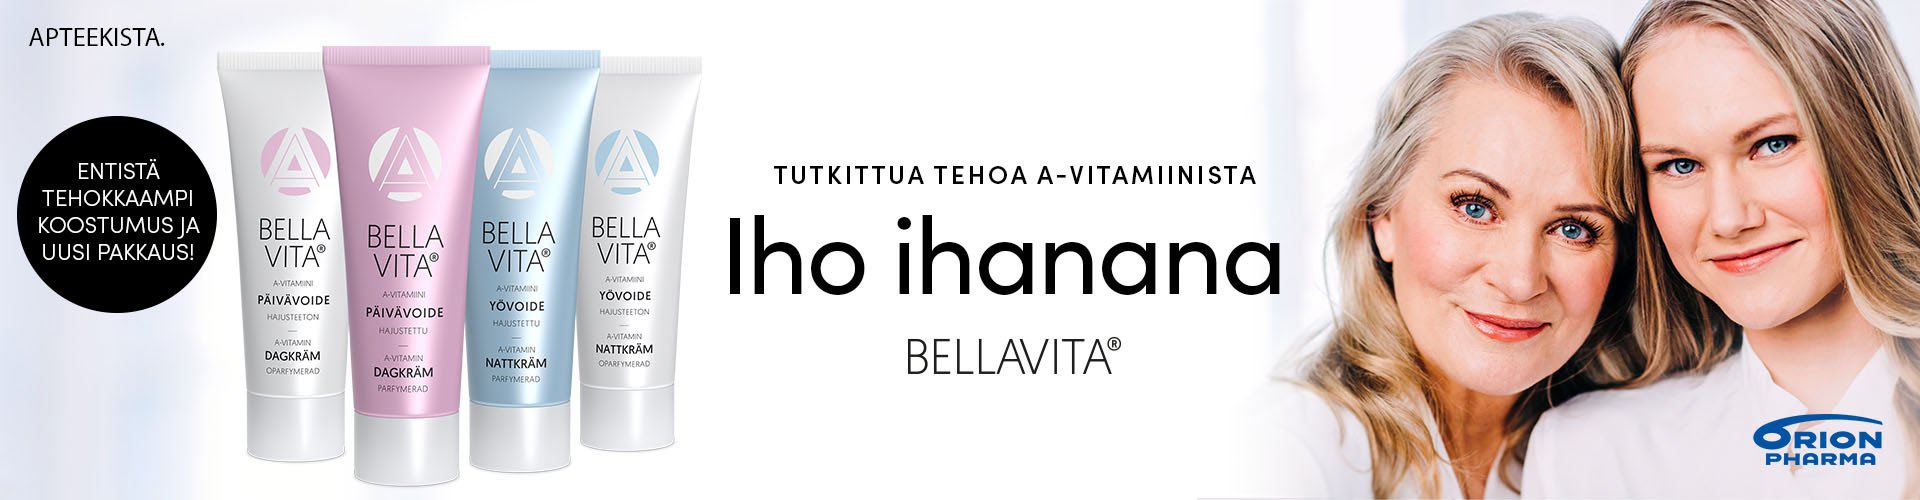 Bellavita- ja Bella -voiteissa on nyt uudet ja entistä tehokkaammat aineosat!